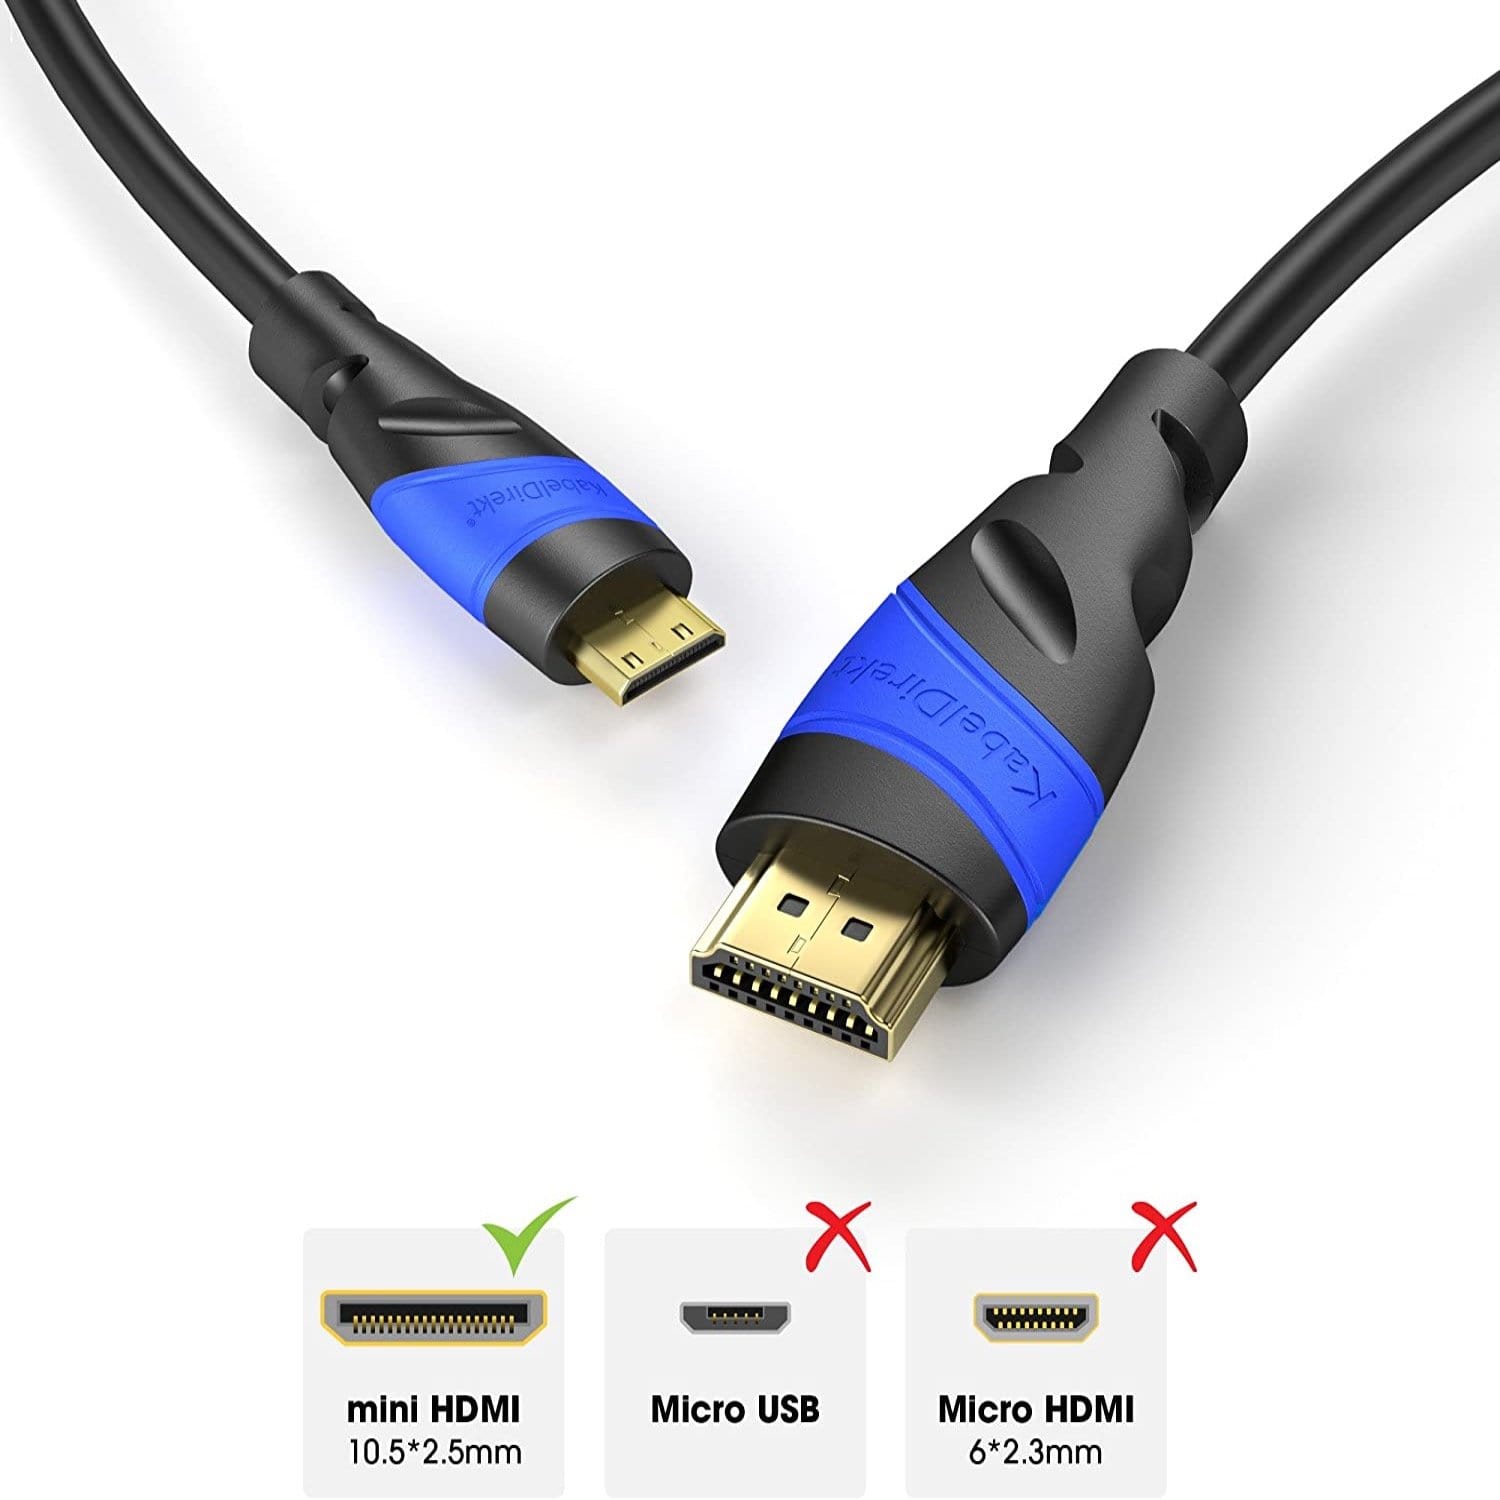 HMDI Cables - 1080P, 4k, Mini HDMI and More 